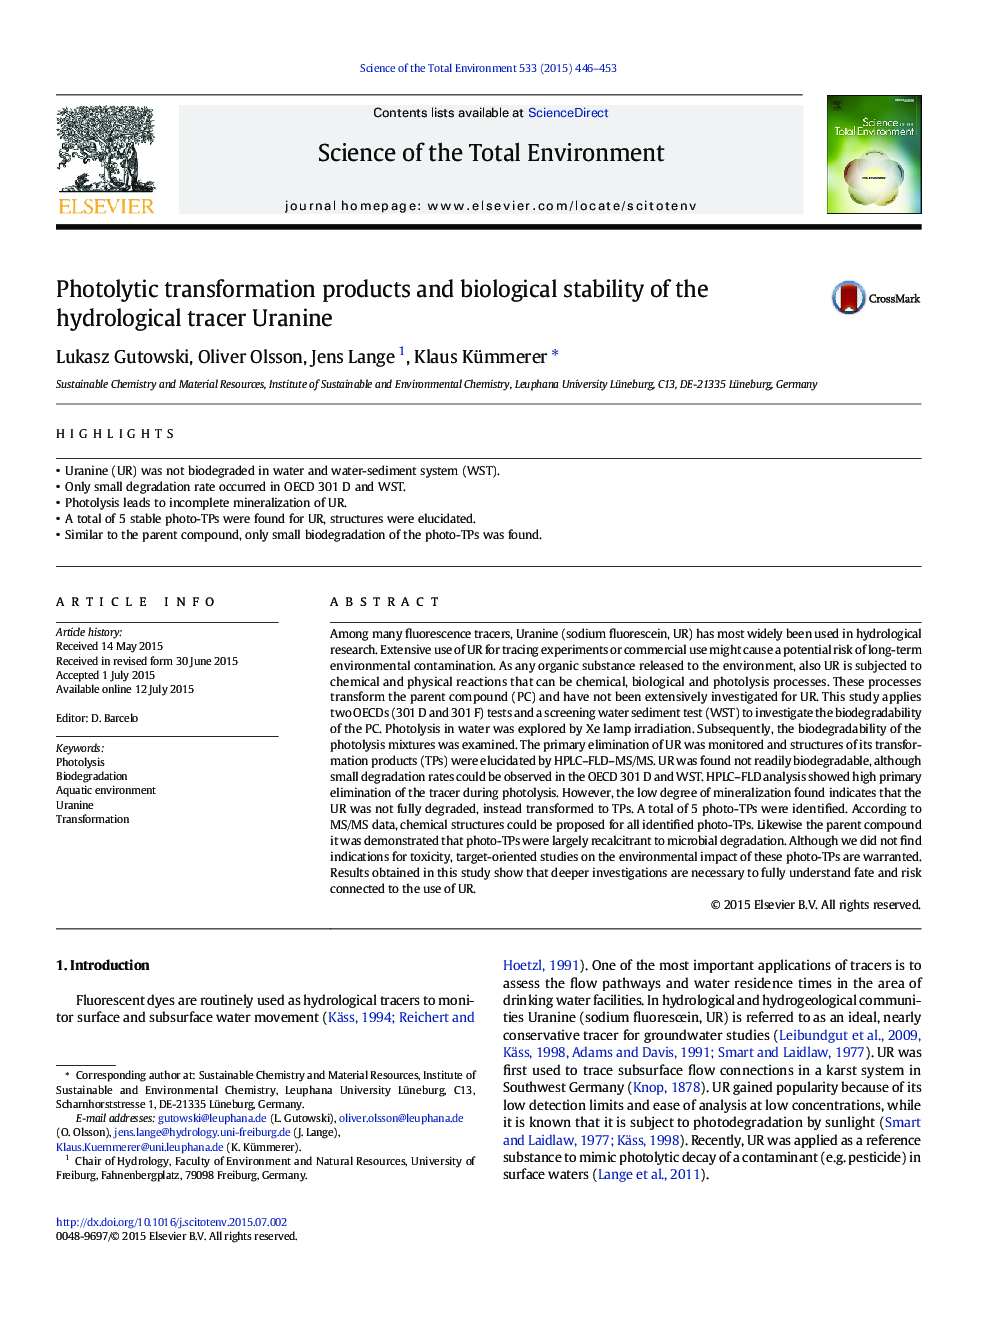 محصولات تغییرات فوتولیتی و پایداری بیولوژیکی ردیاب هیدرولوژیکی اورانیان 